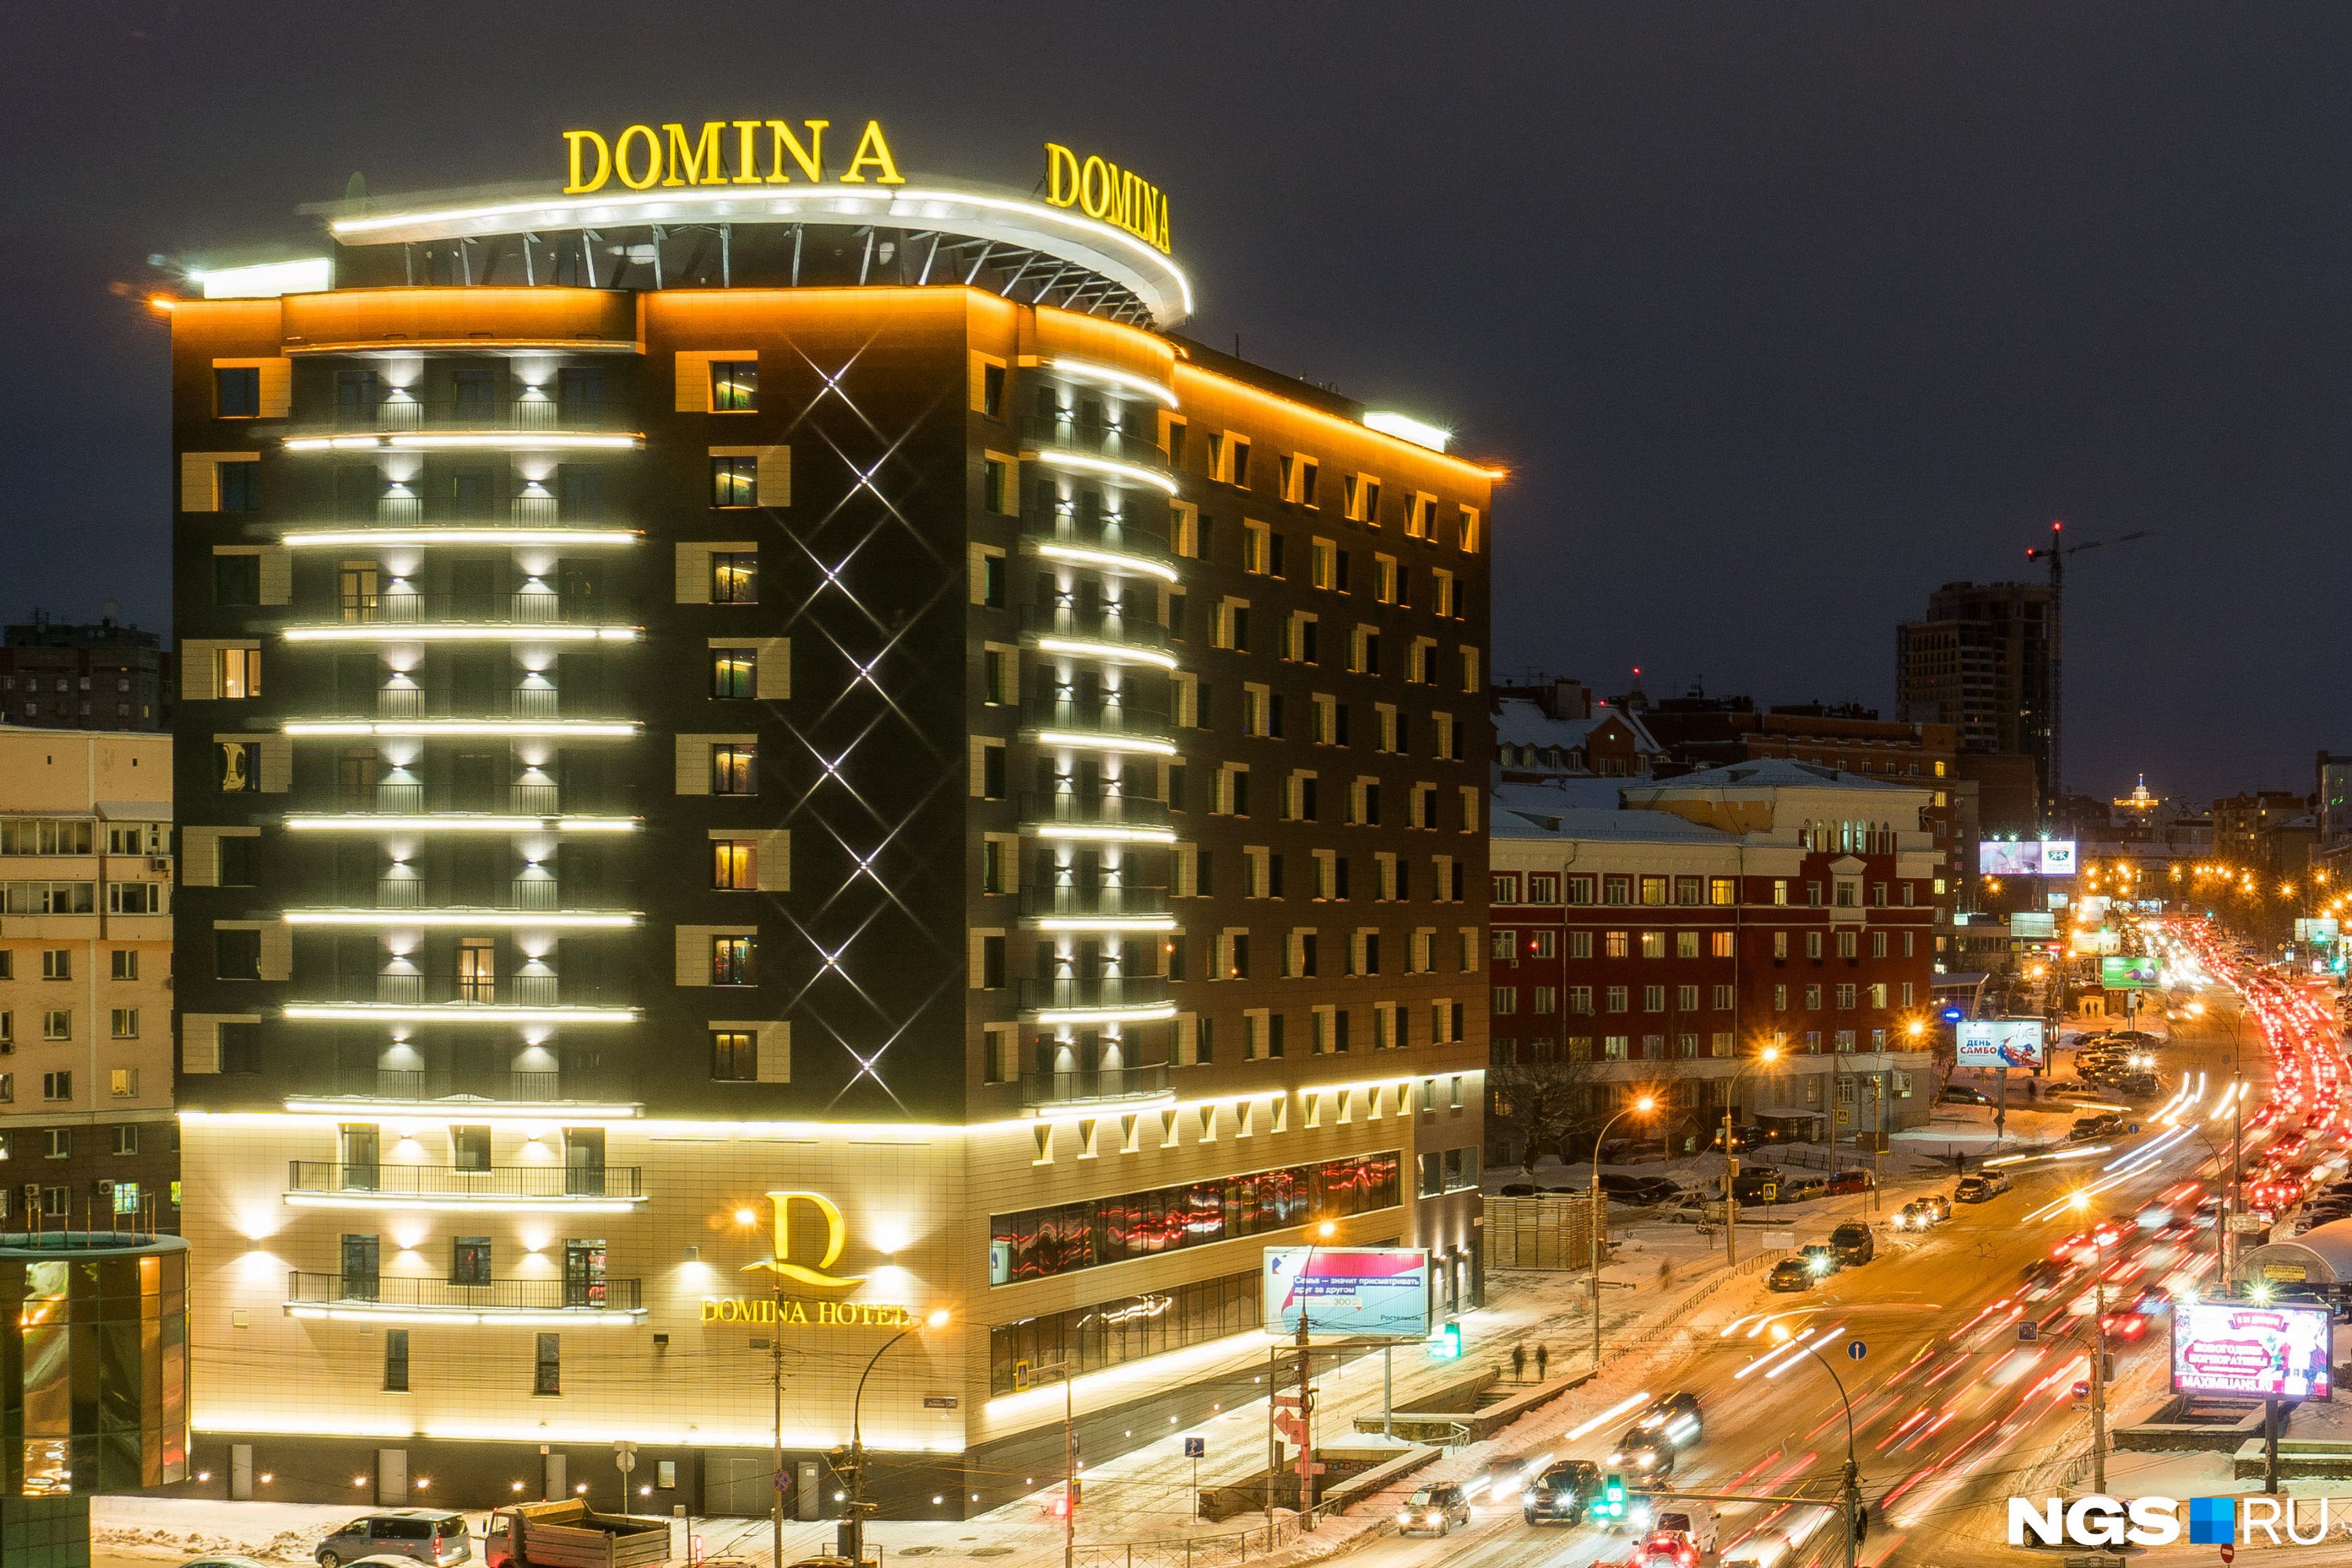 Среди удачных примеров архитектурной подсветки эксперты назвали проекты, которые делали частные инвесторы — в их числе подсветка здания отеля Domina